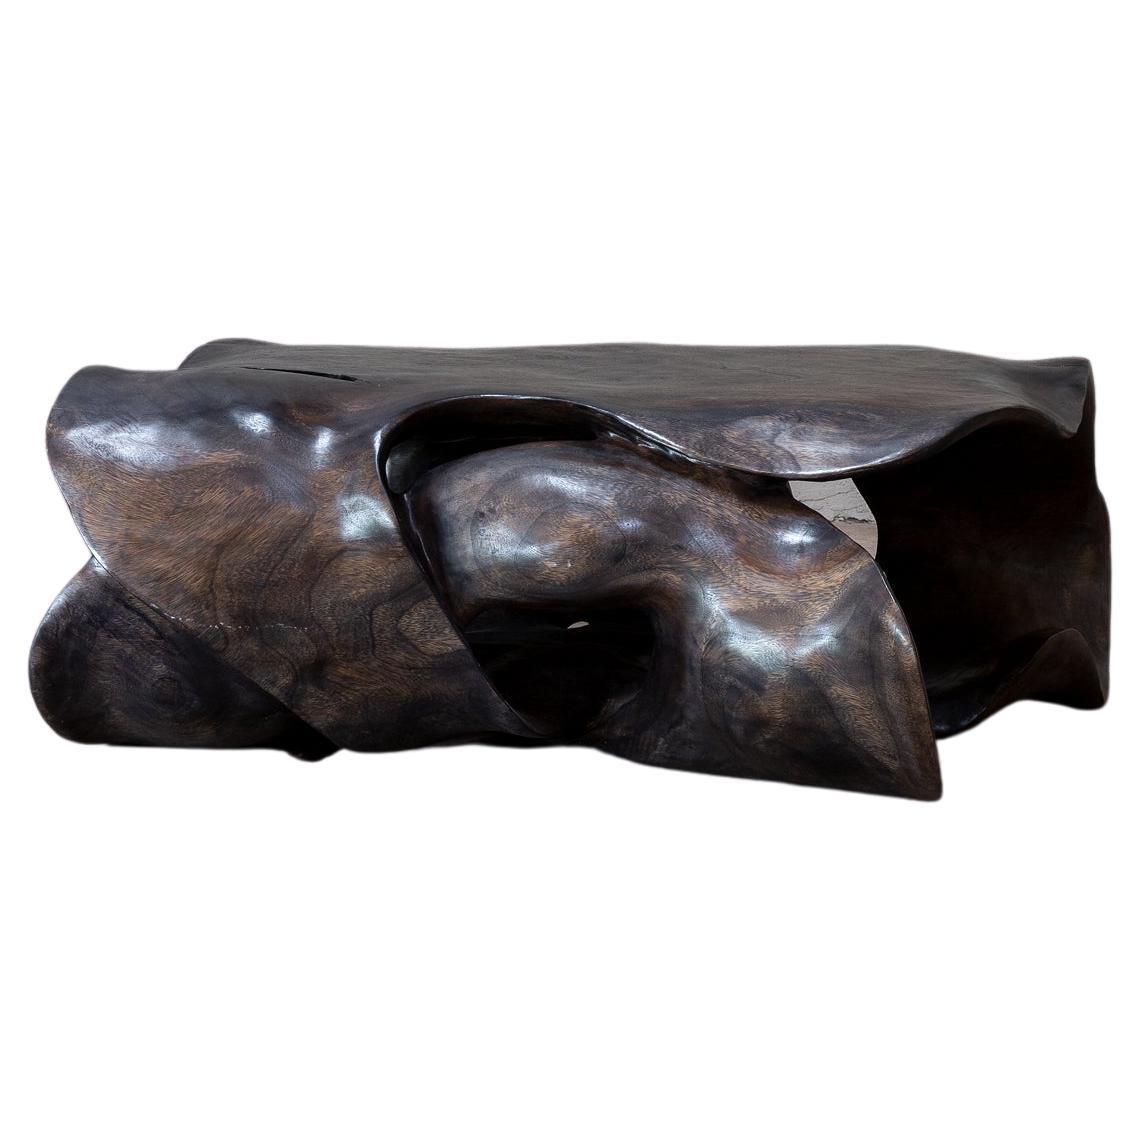 Table basse Nudo Sculpture de CEU Studio, représentée par Tuleste Factory